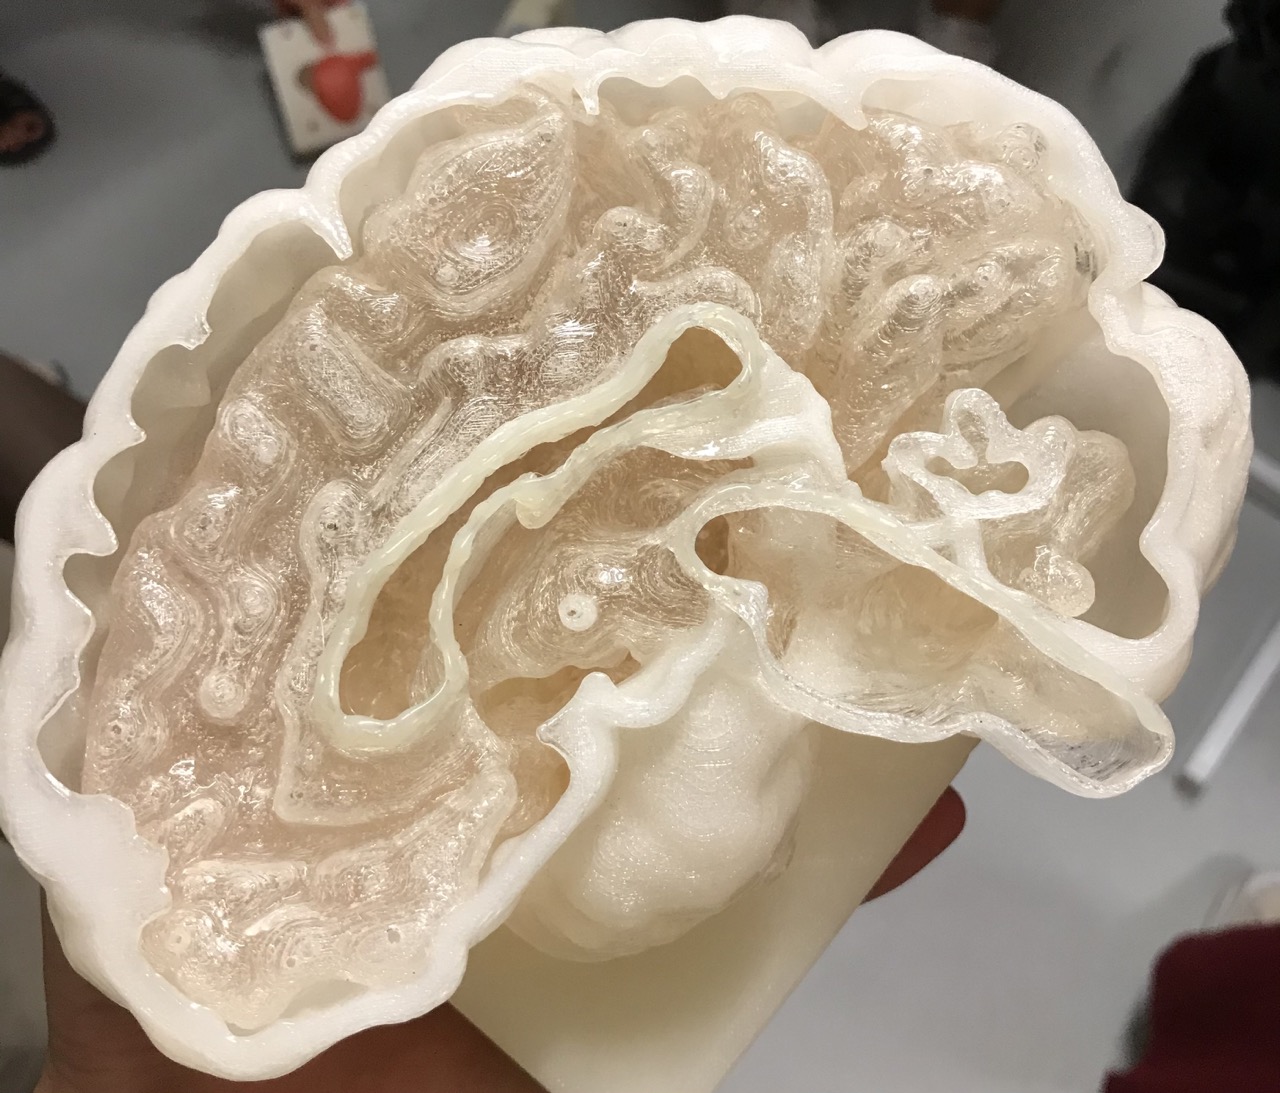 Das Modell eines Gehirns